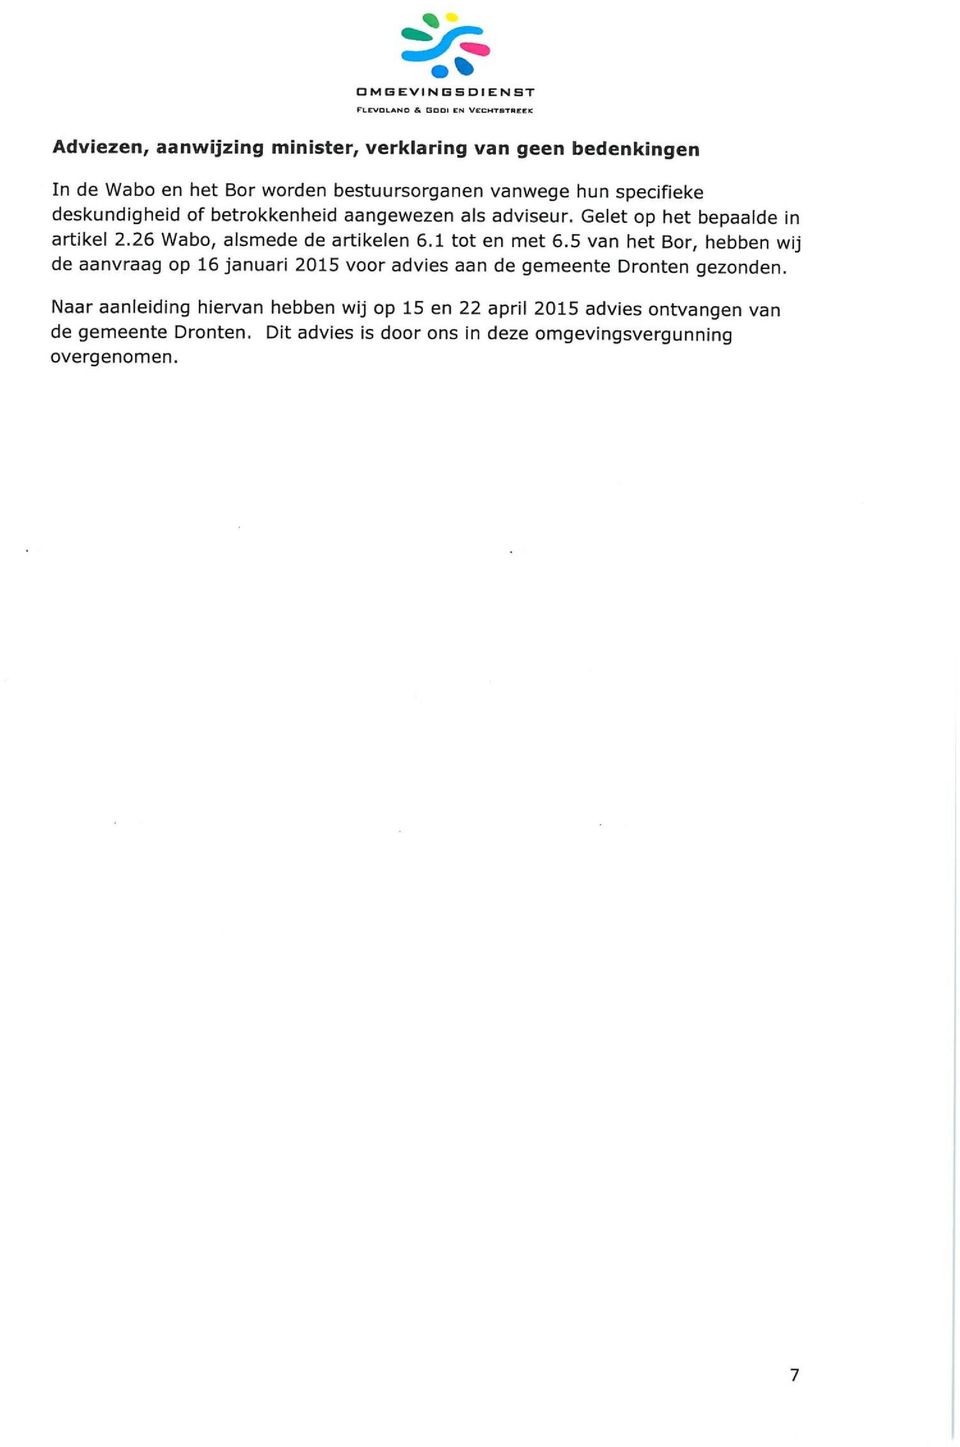 26 Wabo, alsmede de artikelen 6.1 tot en met 6.5 van het Bor, hebben wij de aanvraag op 16 januari 2015 voor advies aan de gemeente Dronten gezonden.